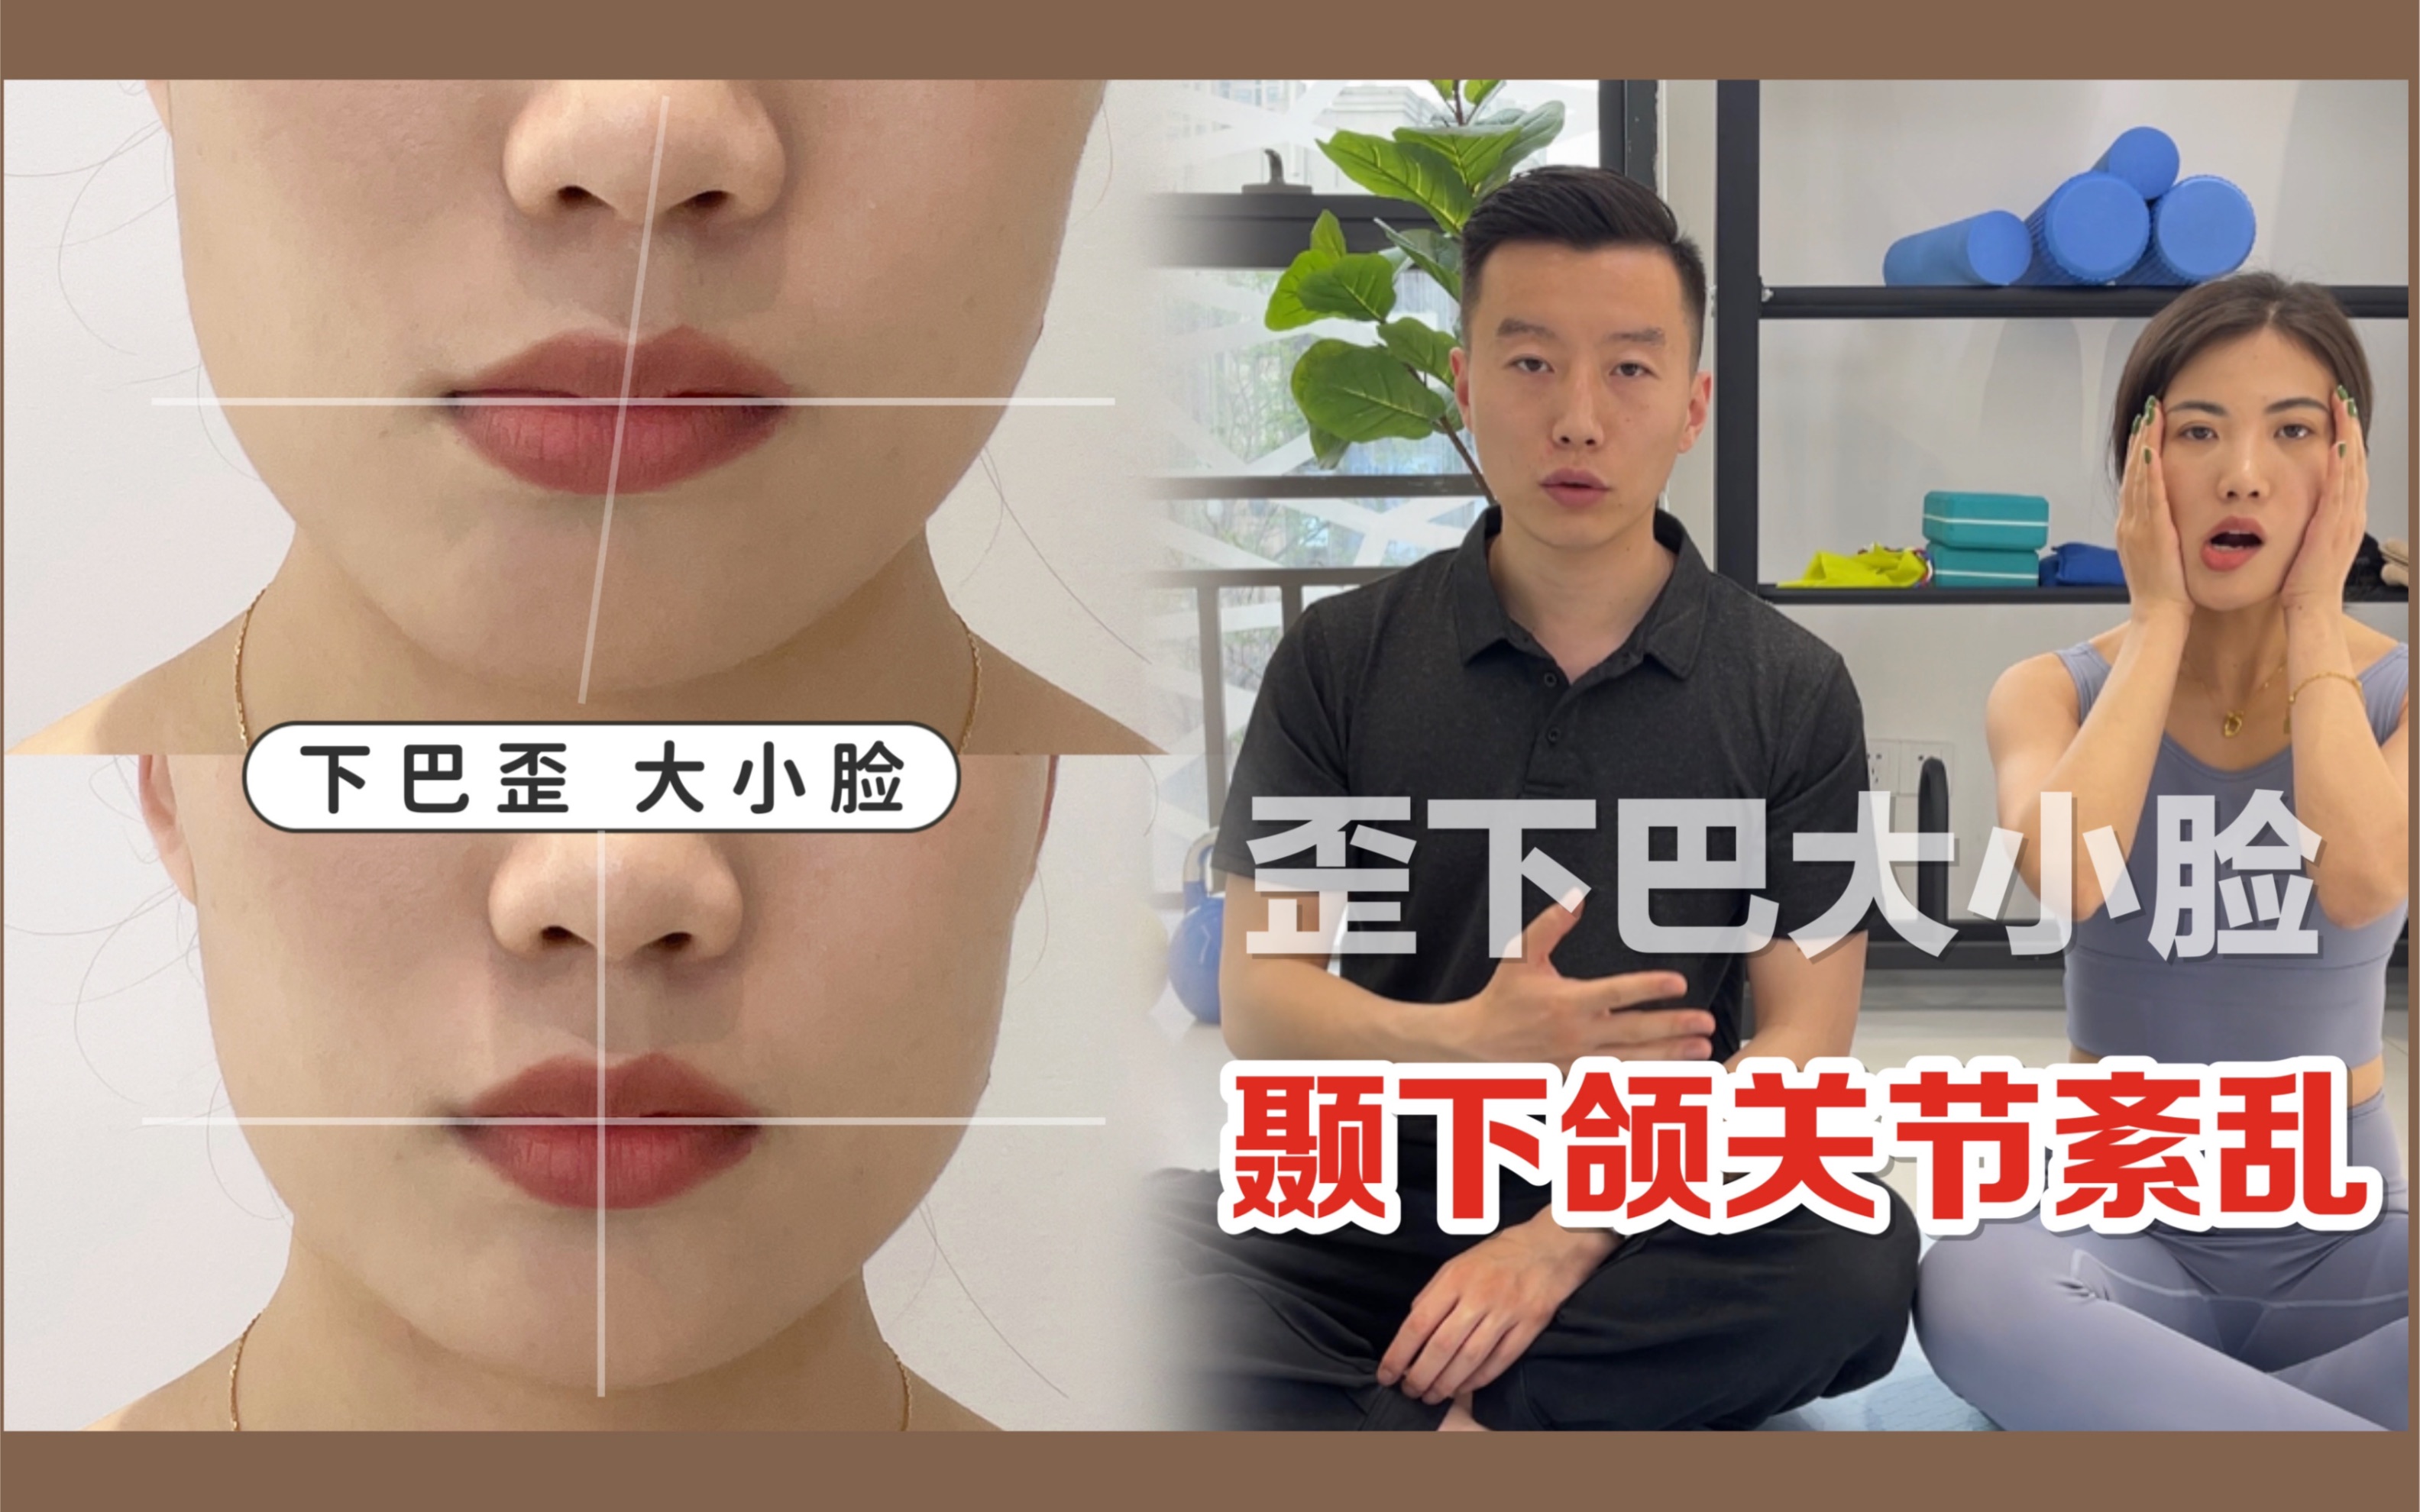 「雙下巴」不只是一個部位的治療 - P.SKIN 彭賢禮皮膚科│國際皮膚科-100%皮膚專科講師級醫生團隊